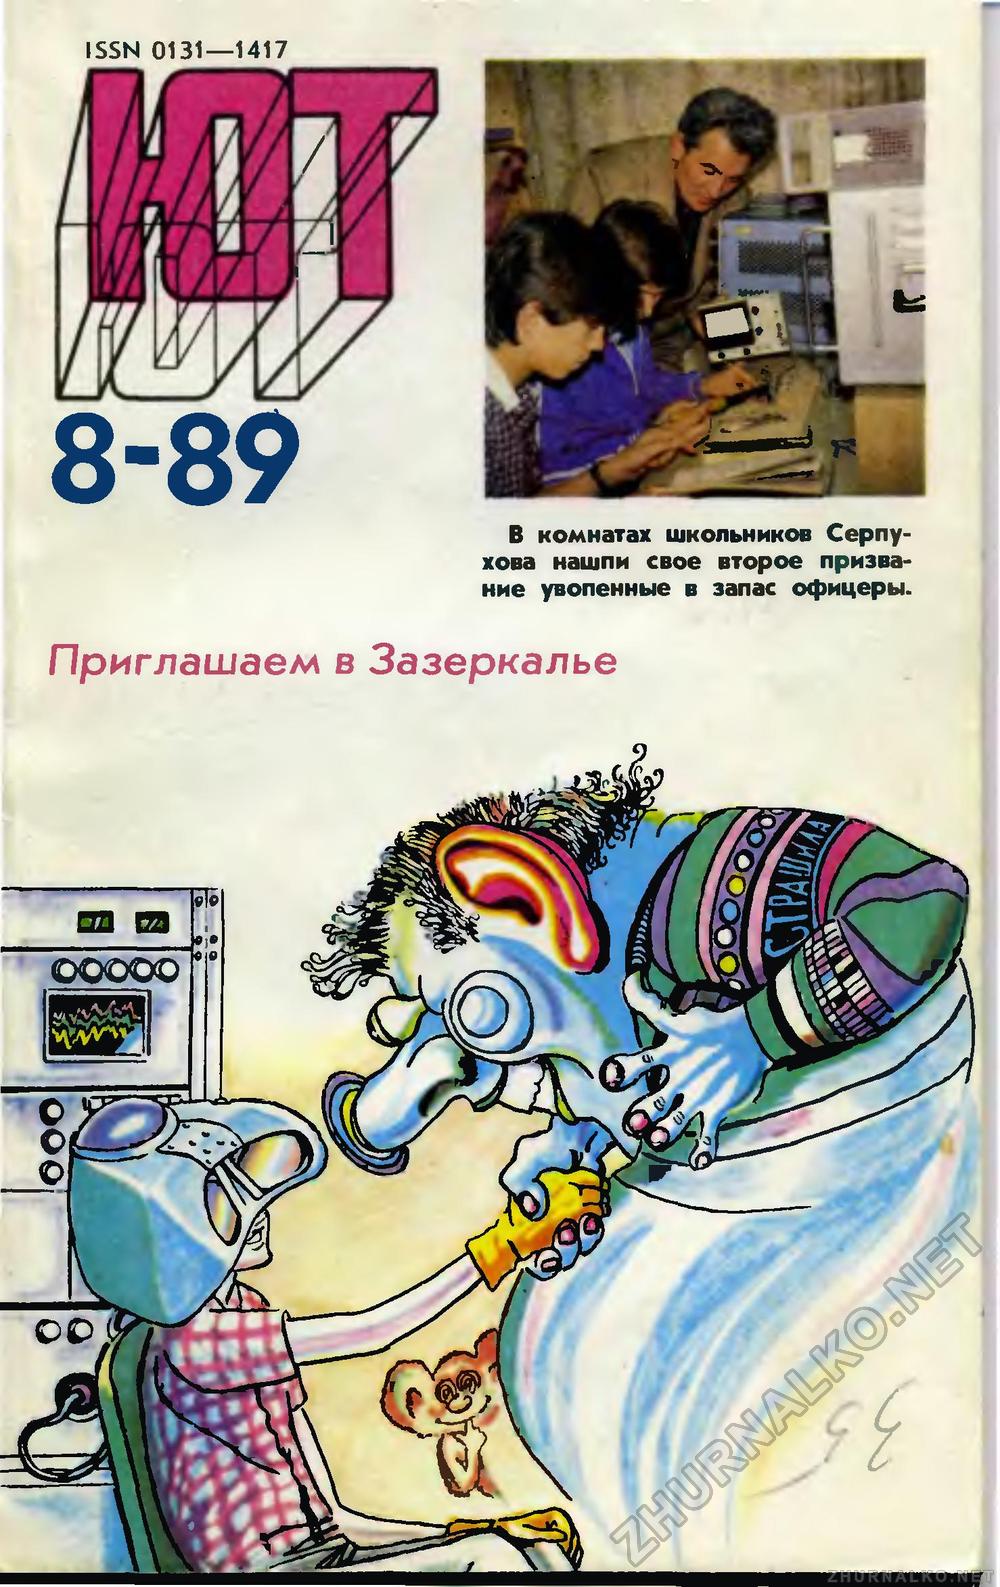   1989-08,  1